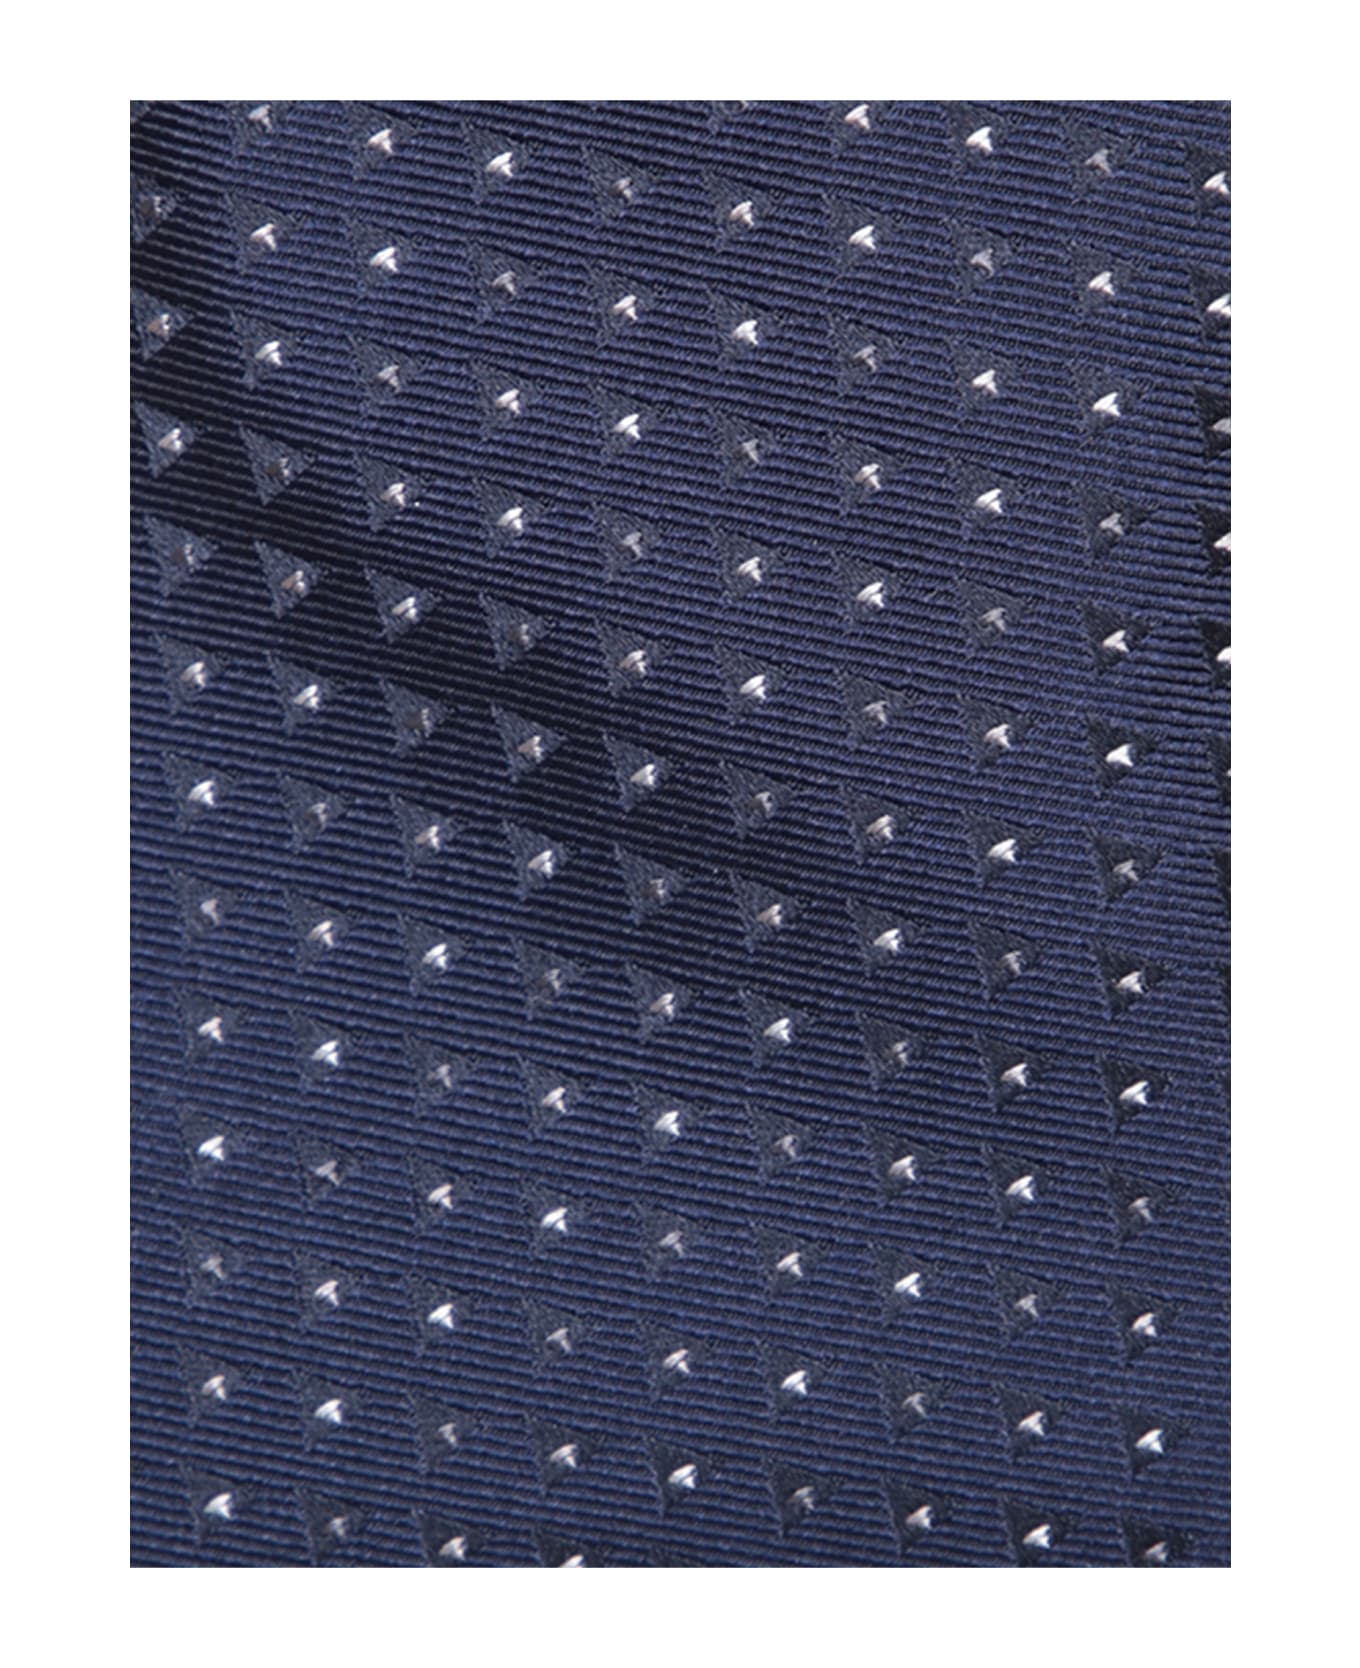 Brunello Cucinelli Dot-printed Tie - Blue ネクタイ